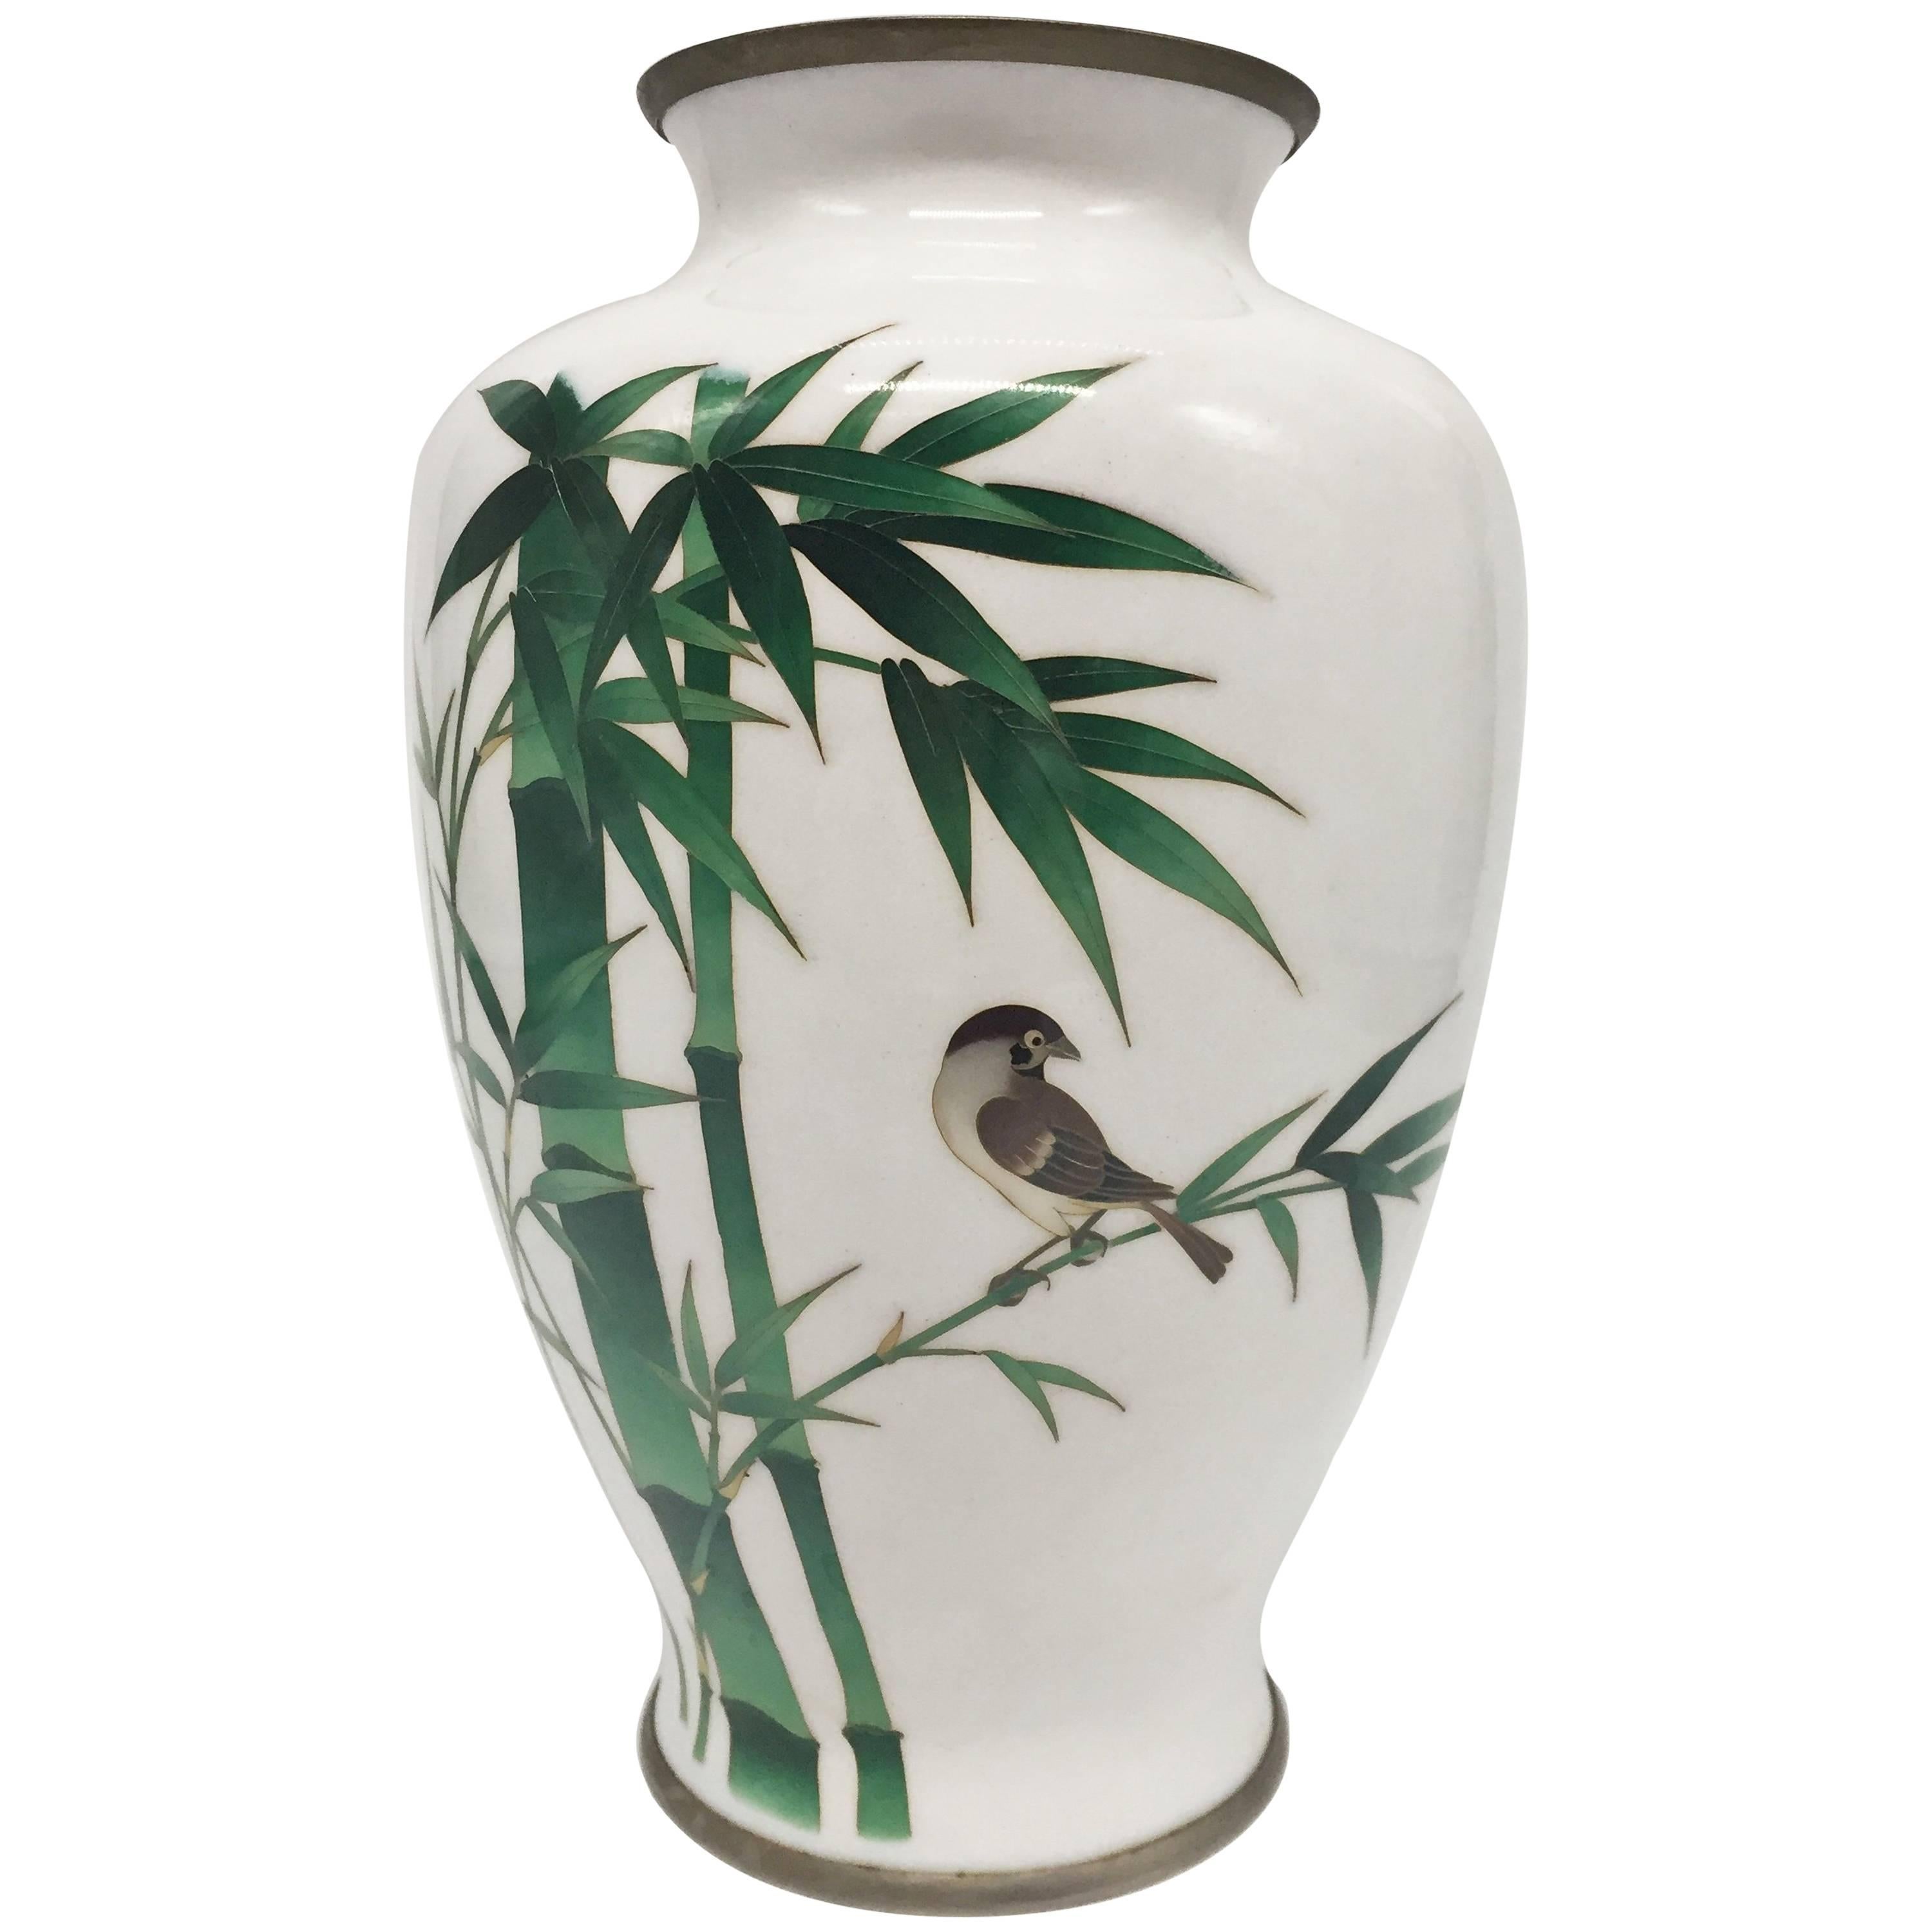 Ando Jubei Cloisonne Vase, Signed, Japanese Cloisonne, Bamboo and Bird